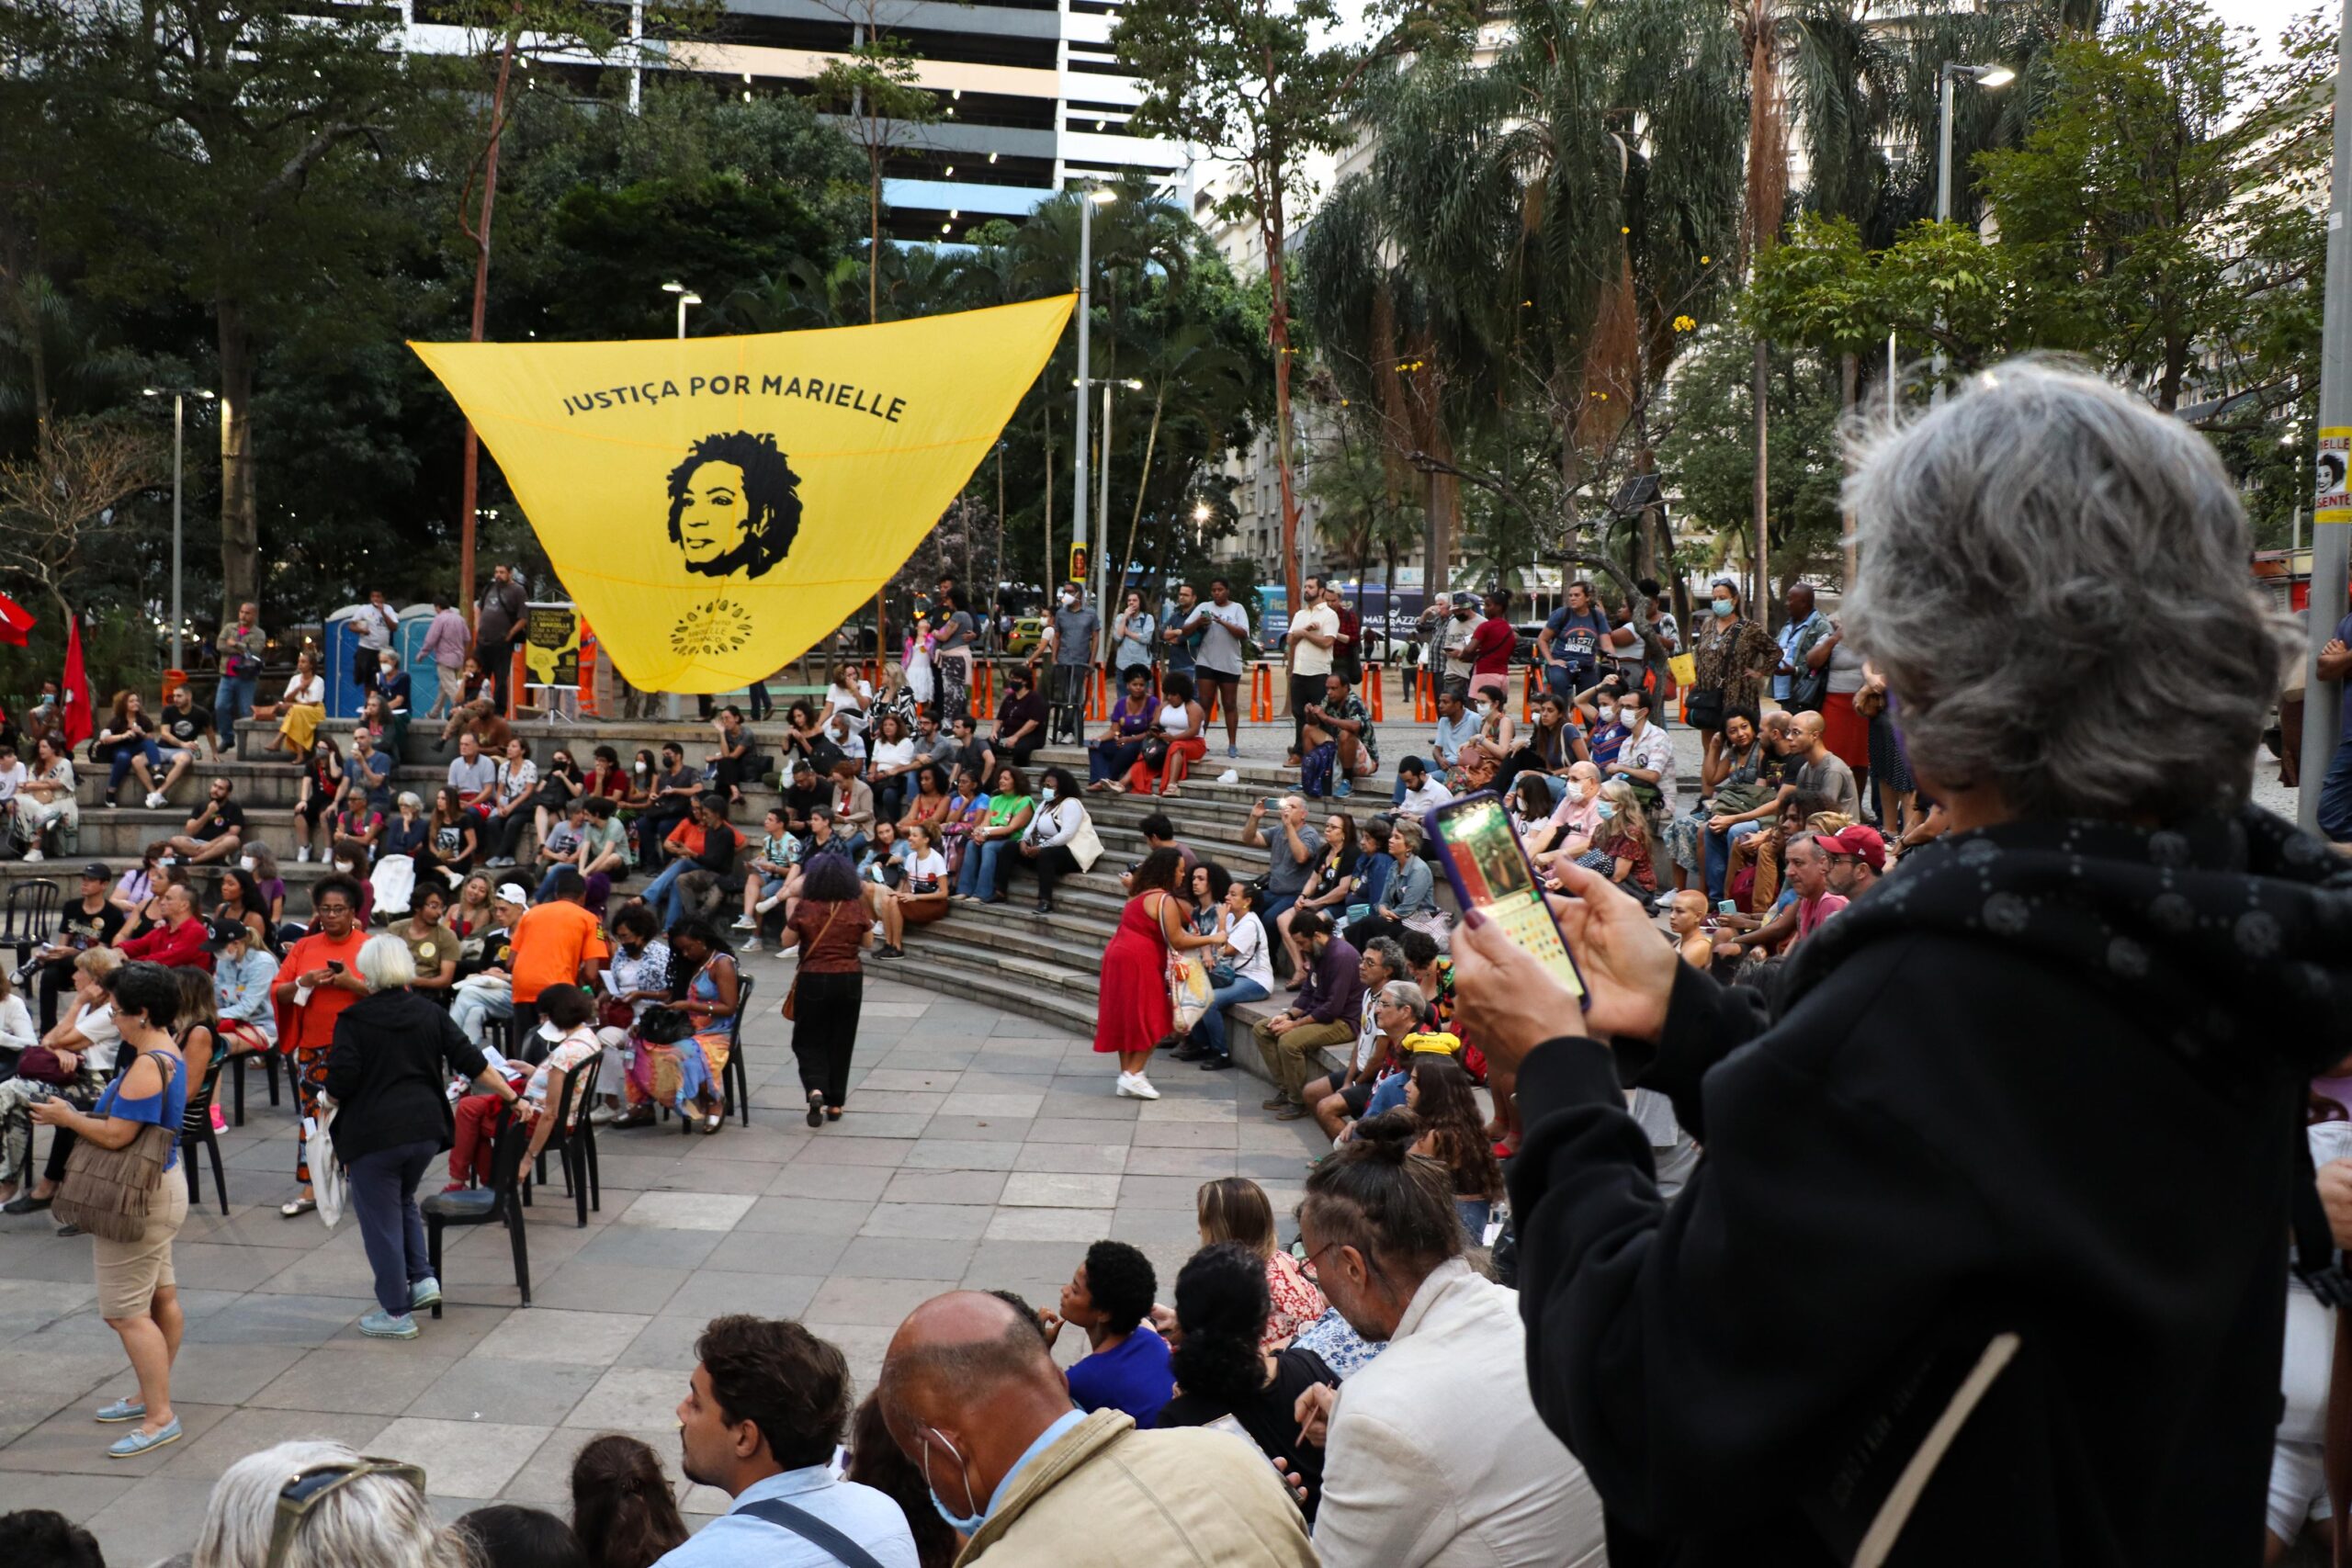 Público comparece na inauguração da estátua de Marielle Franco. Foto: Alexandre Cerqueira/ComCat